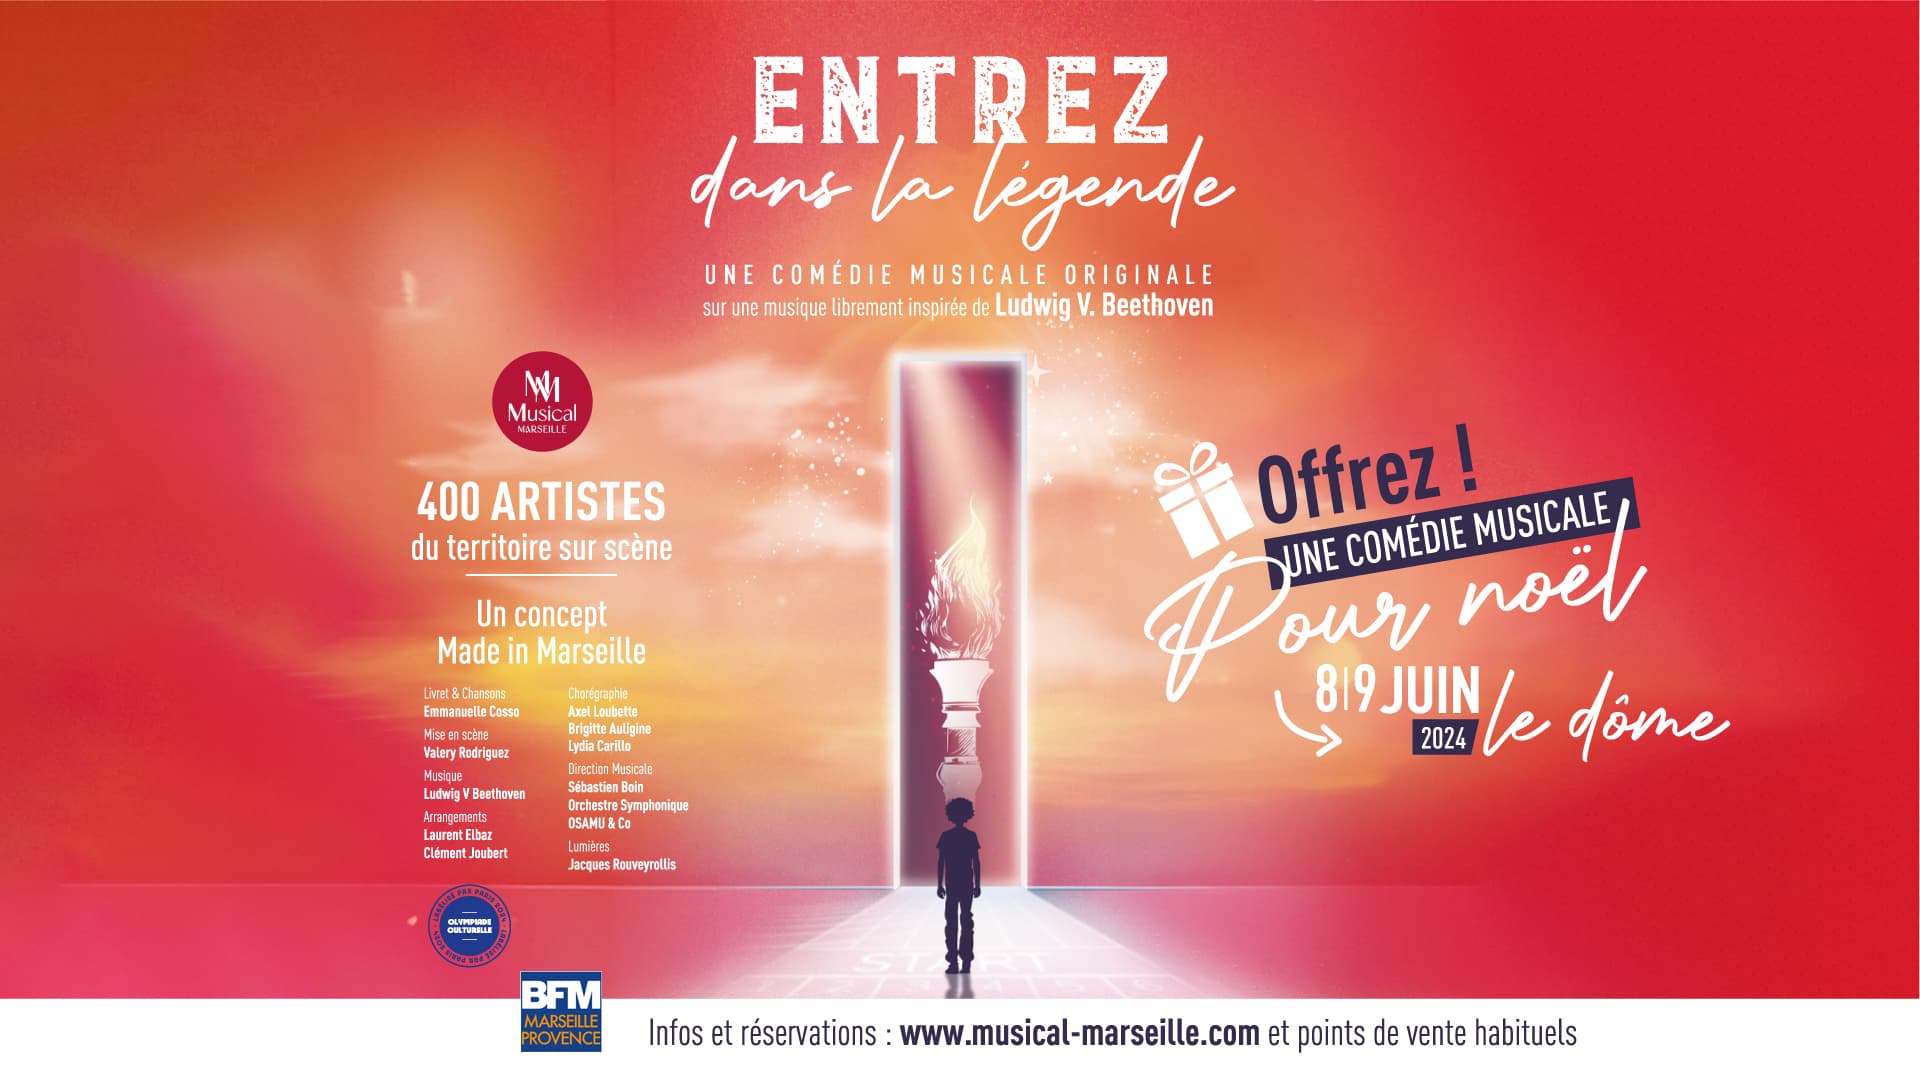 Entrez Dans La Légende - Une Comédie Musicale Originale in der Le Dome Tickets